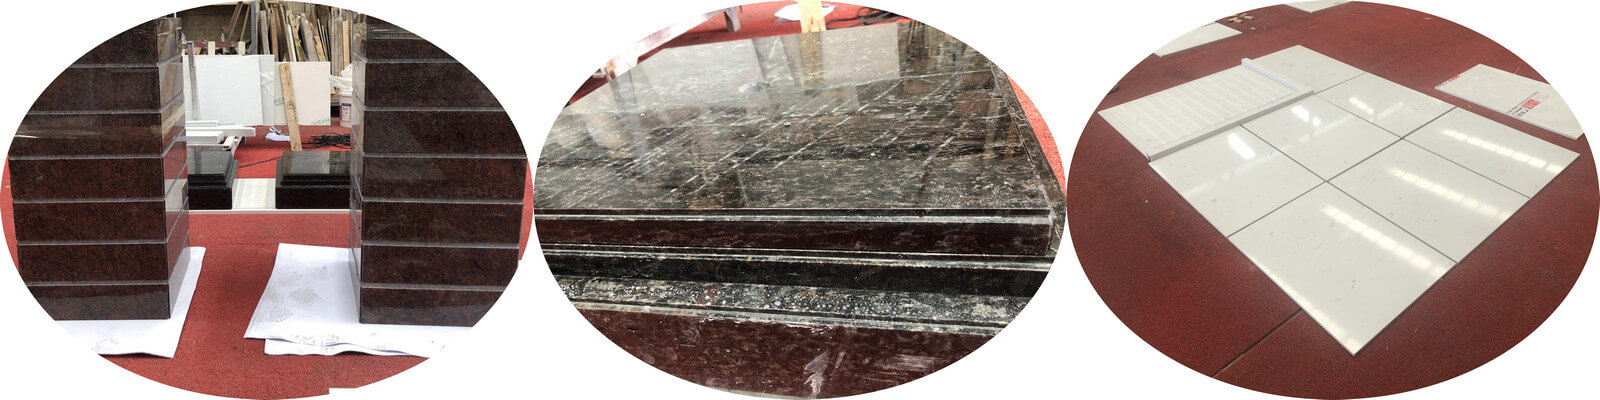 Quartz Stone, Marble & Grainte Countertops Fabrication For Hotel Condo Project 12